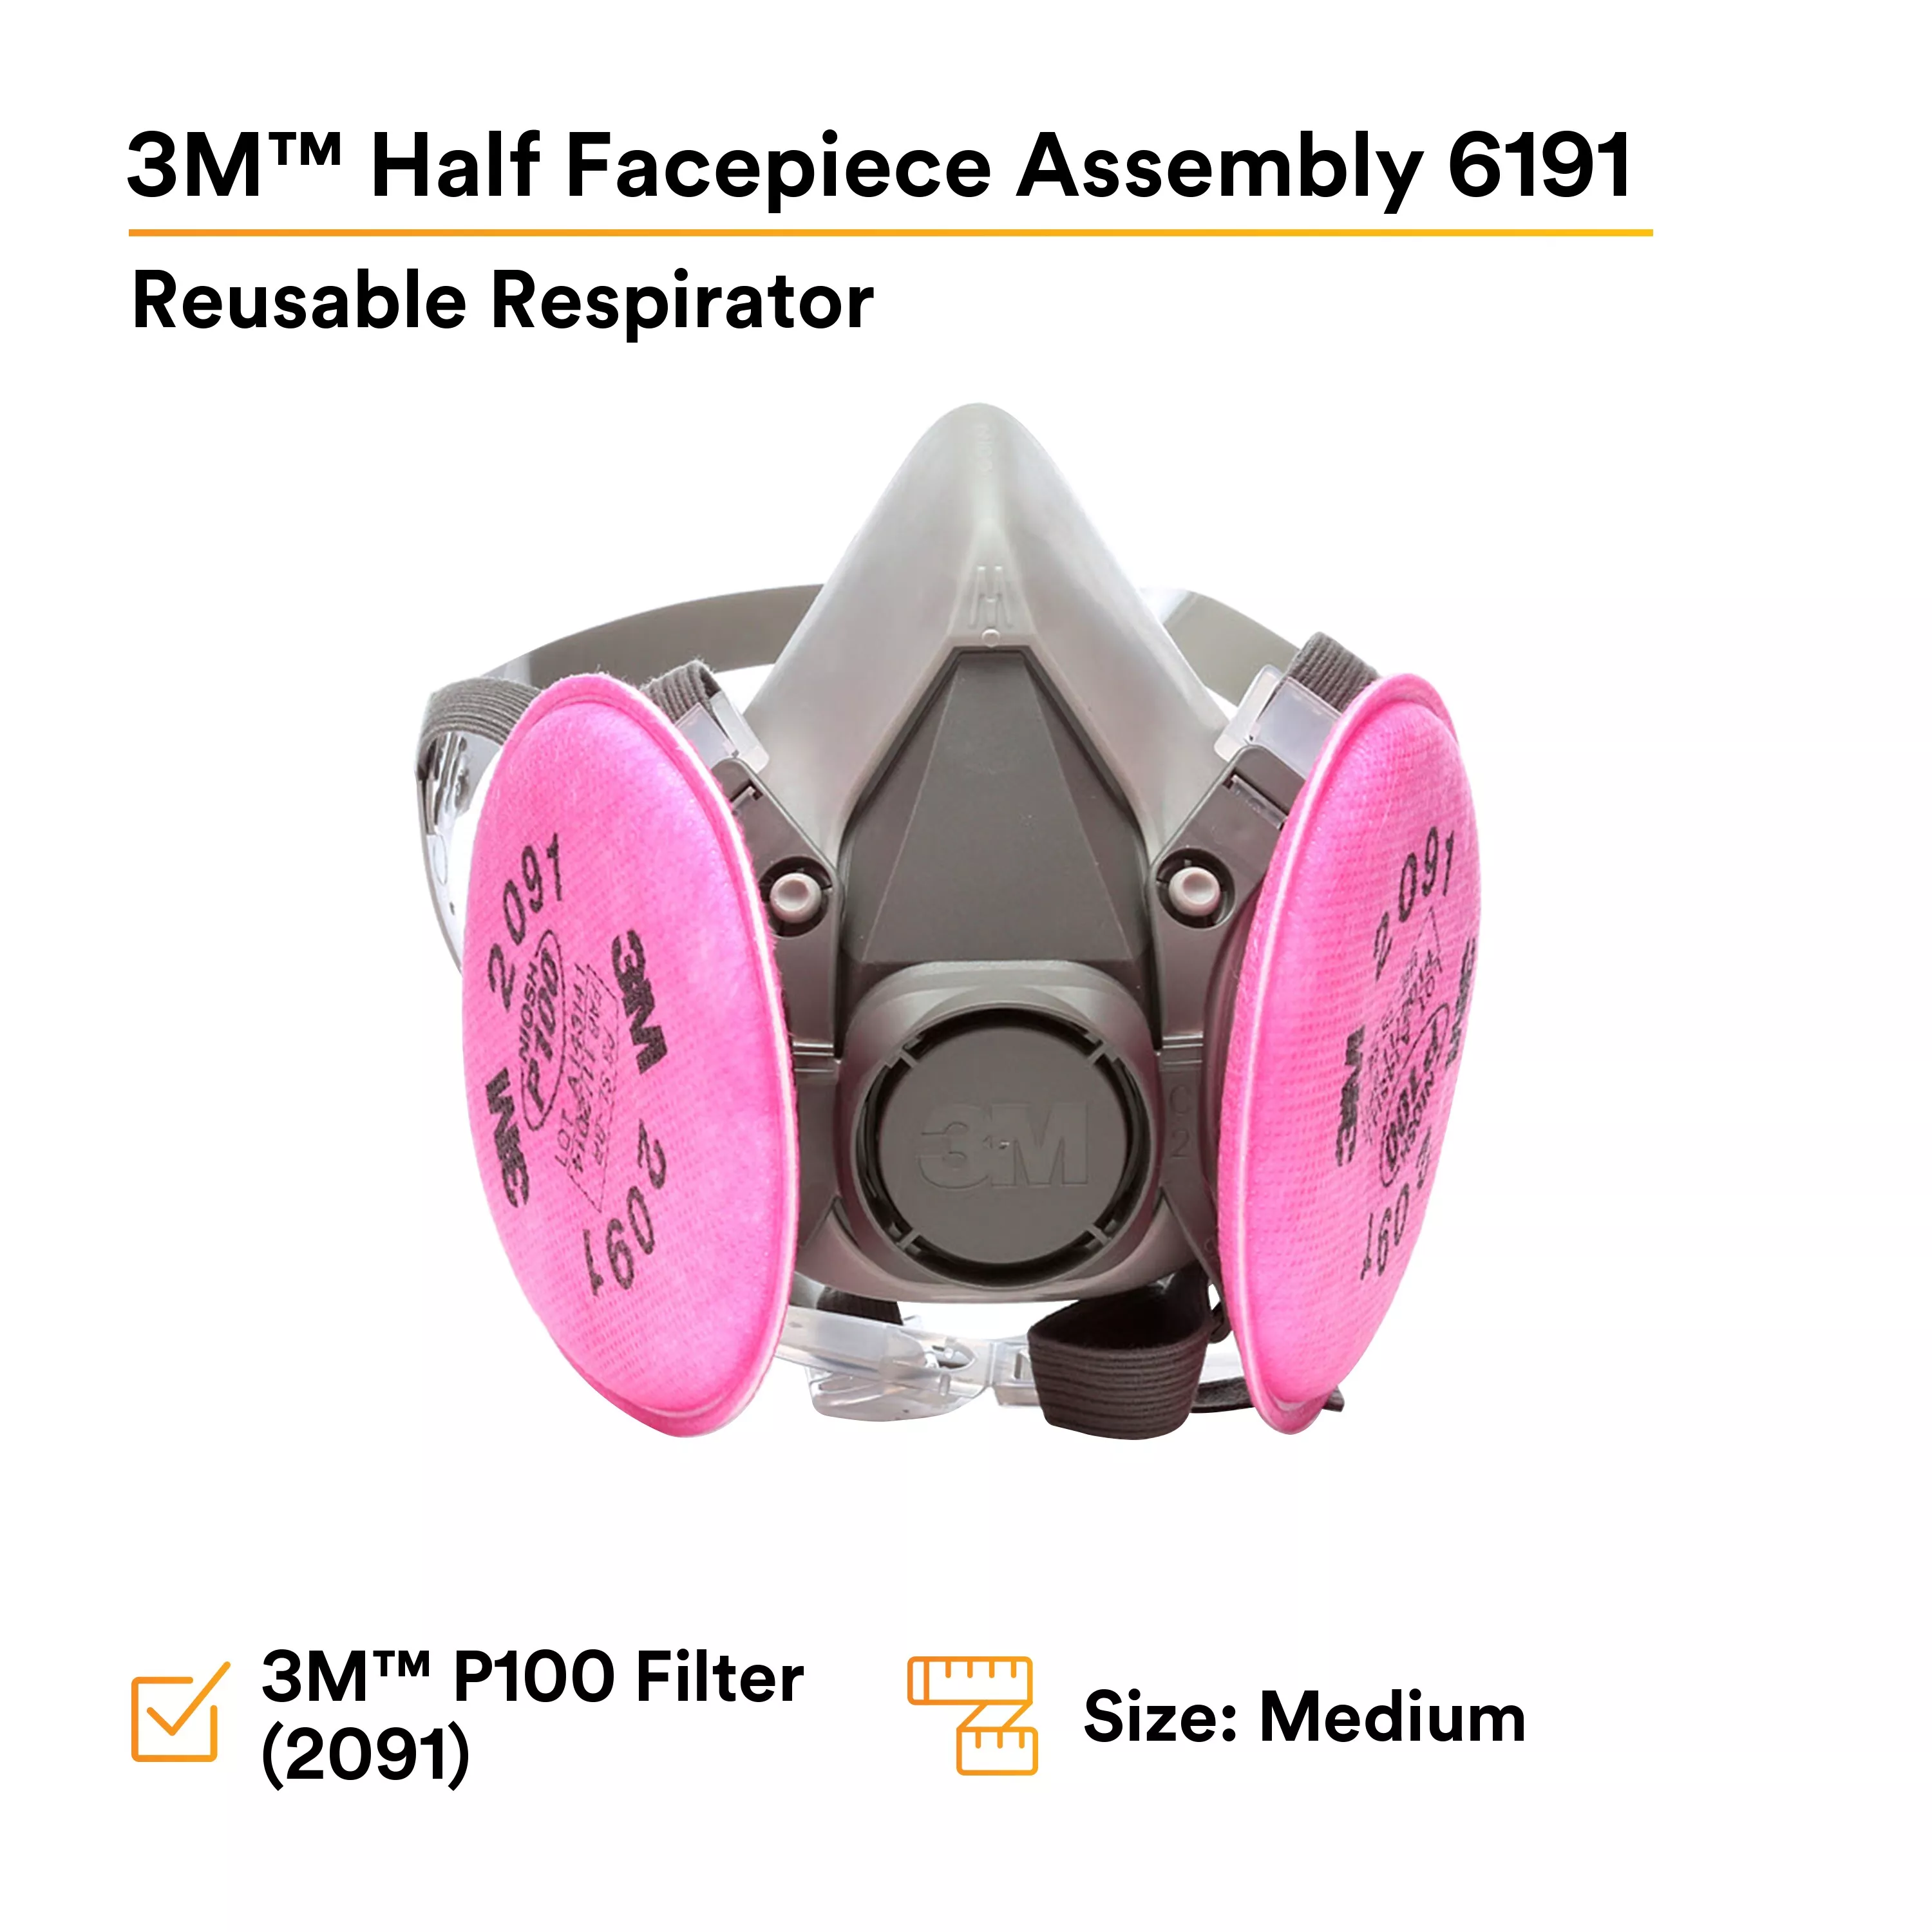 SKU 7010383694 | 3M™ Half Facepiece Reusable Respirator Assembly 6191/07001(AAD)